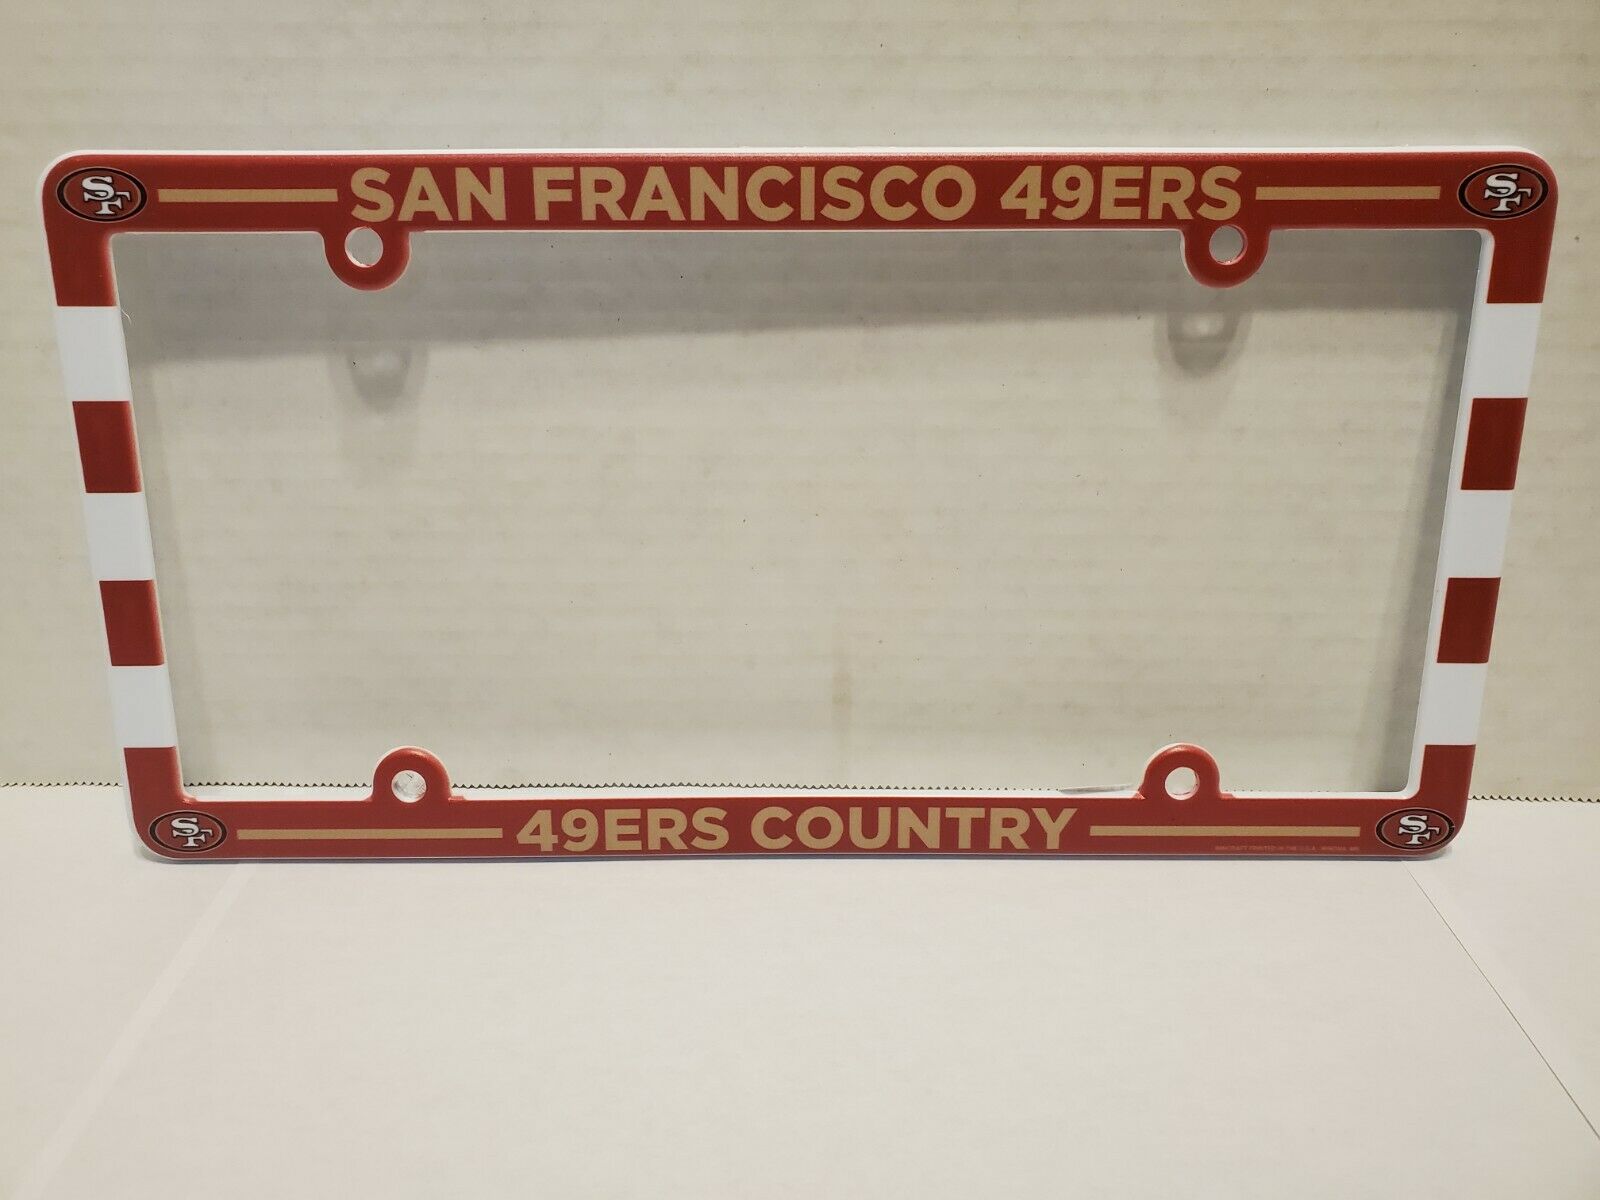 San Fransisco 49ers license plate frame